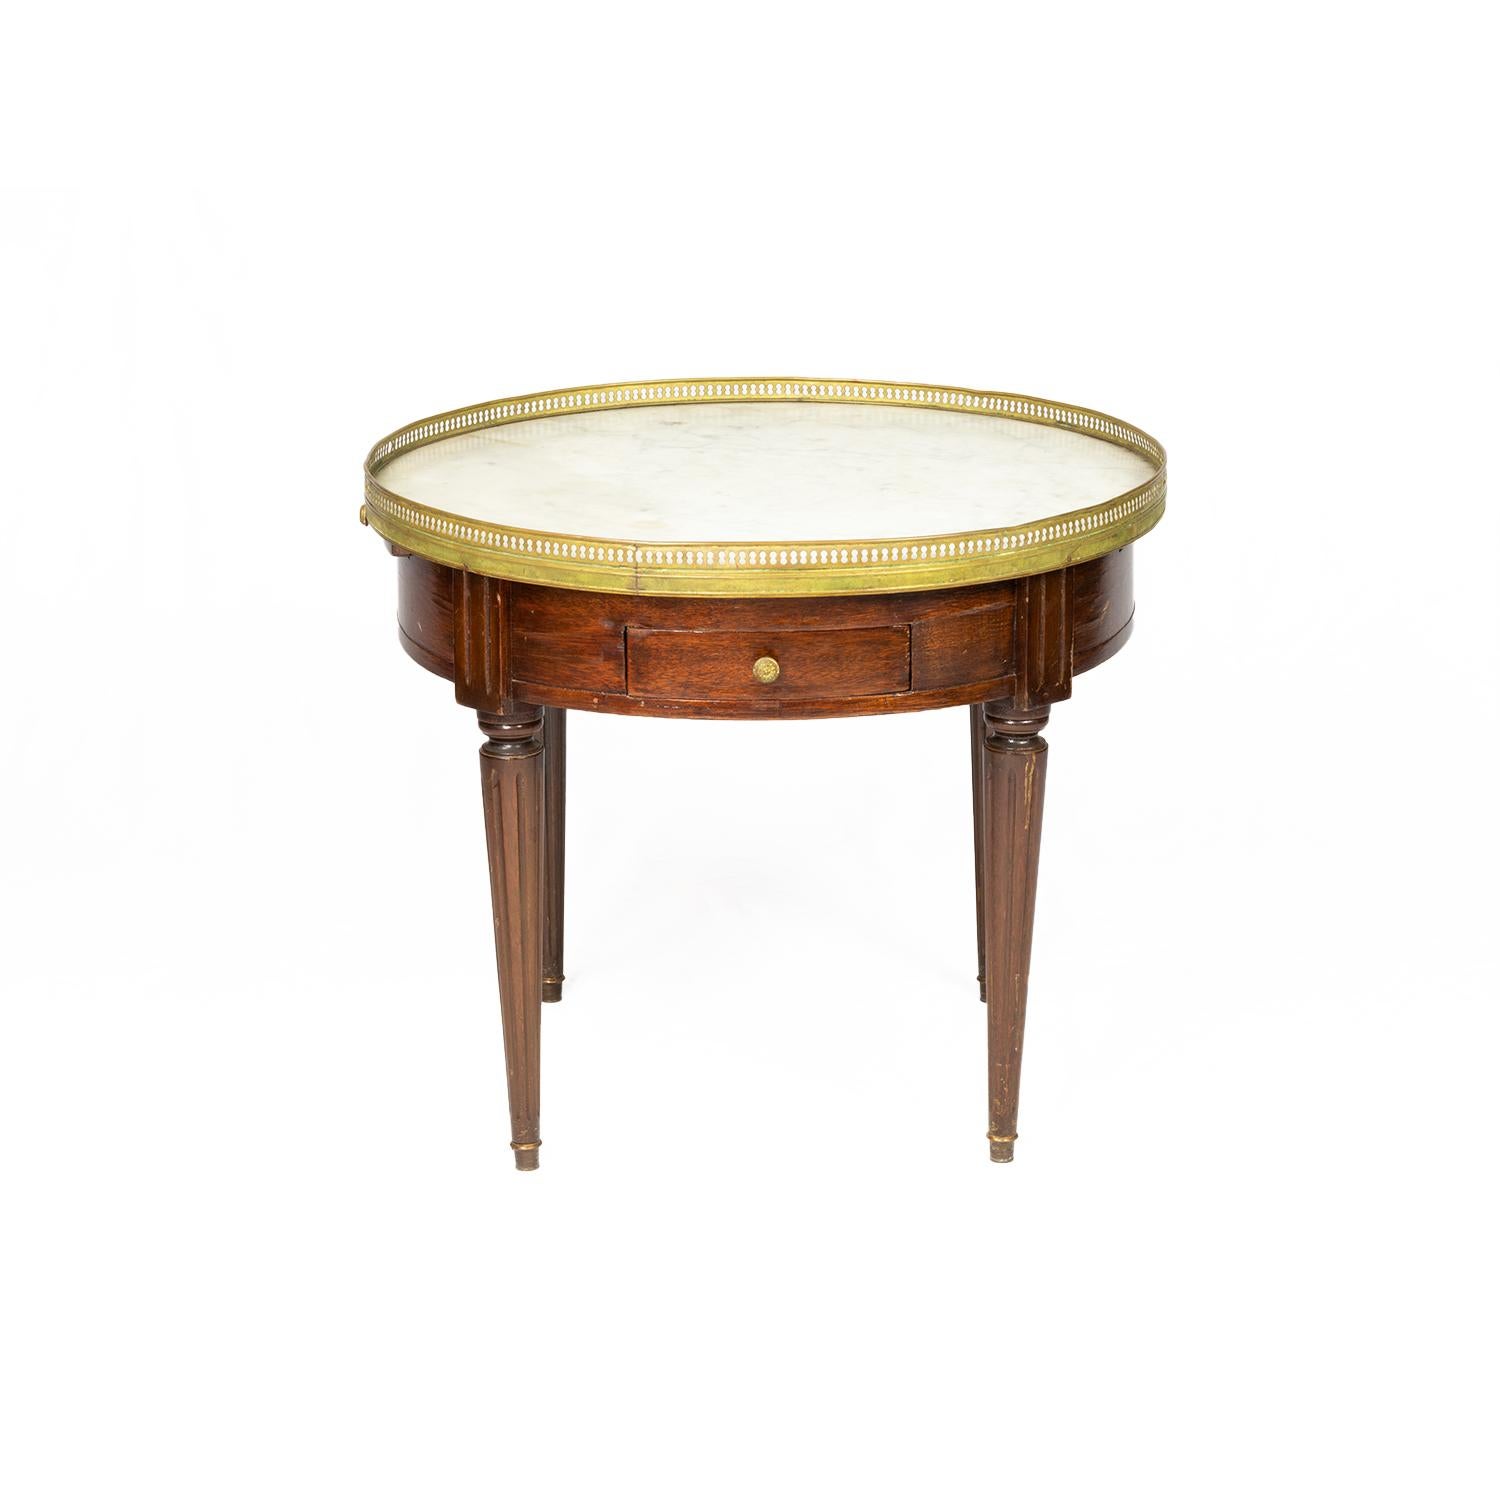 Table d'appoint ronde en acajou de style Louis XVI, Bouillotte, unique en son genre, datant du 19ème siècle.
Dessus en marbre, rail doré, deux tiroirs et extensions de chaque côté pour les verres avec doublure en cuir.